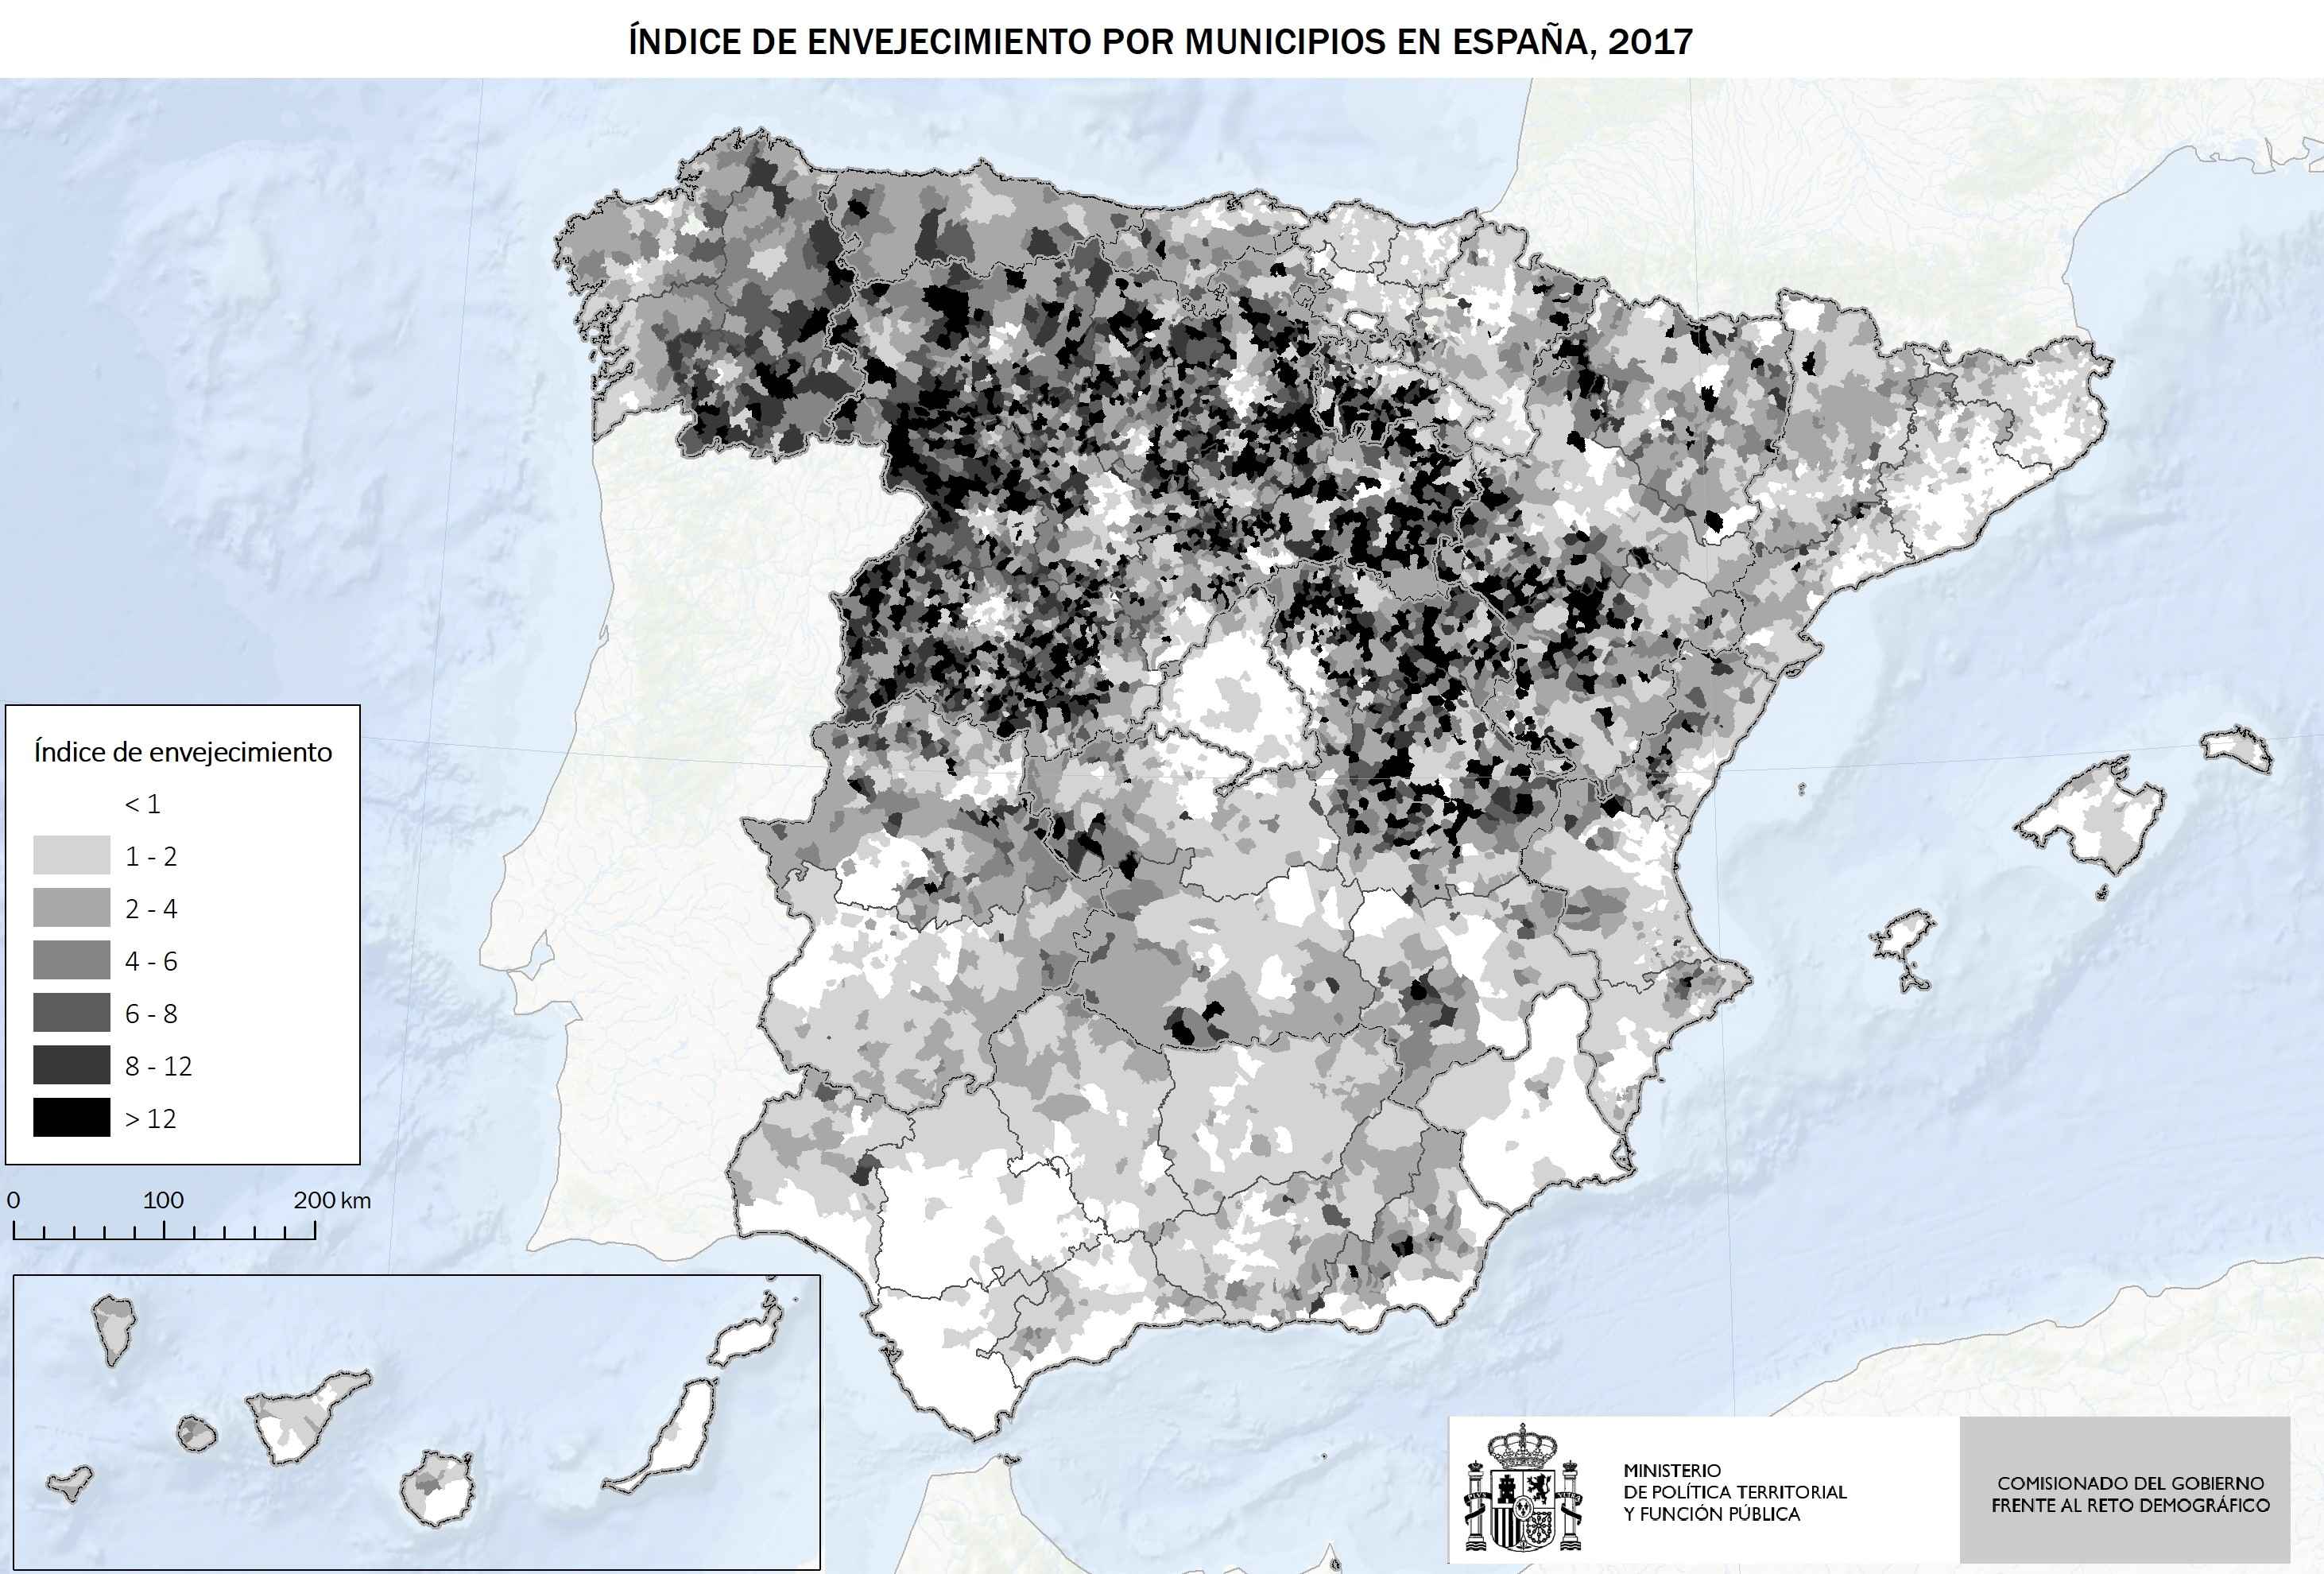 Índice de envejecimiento de municipios en España 2017